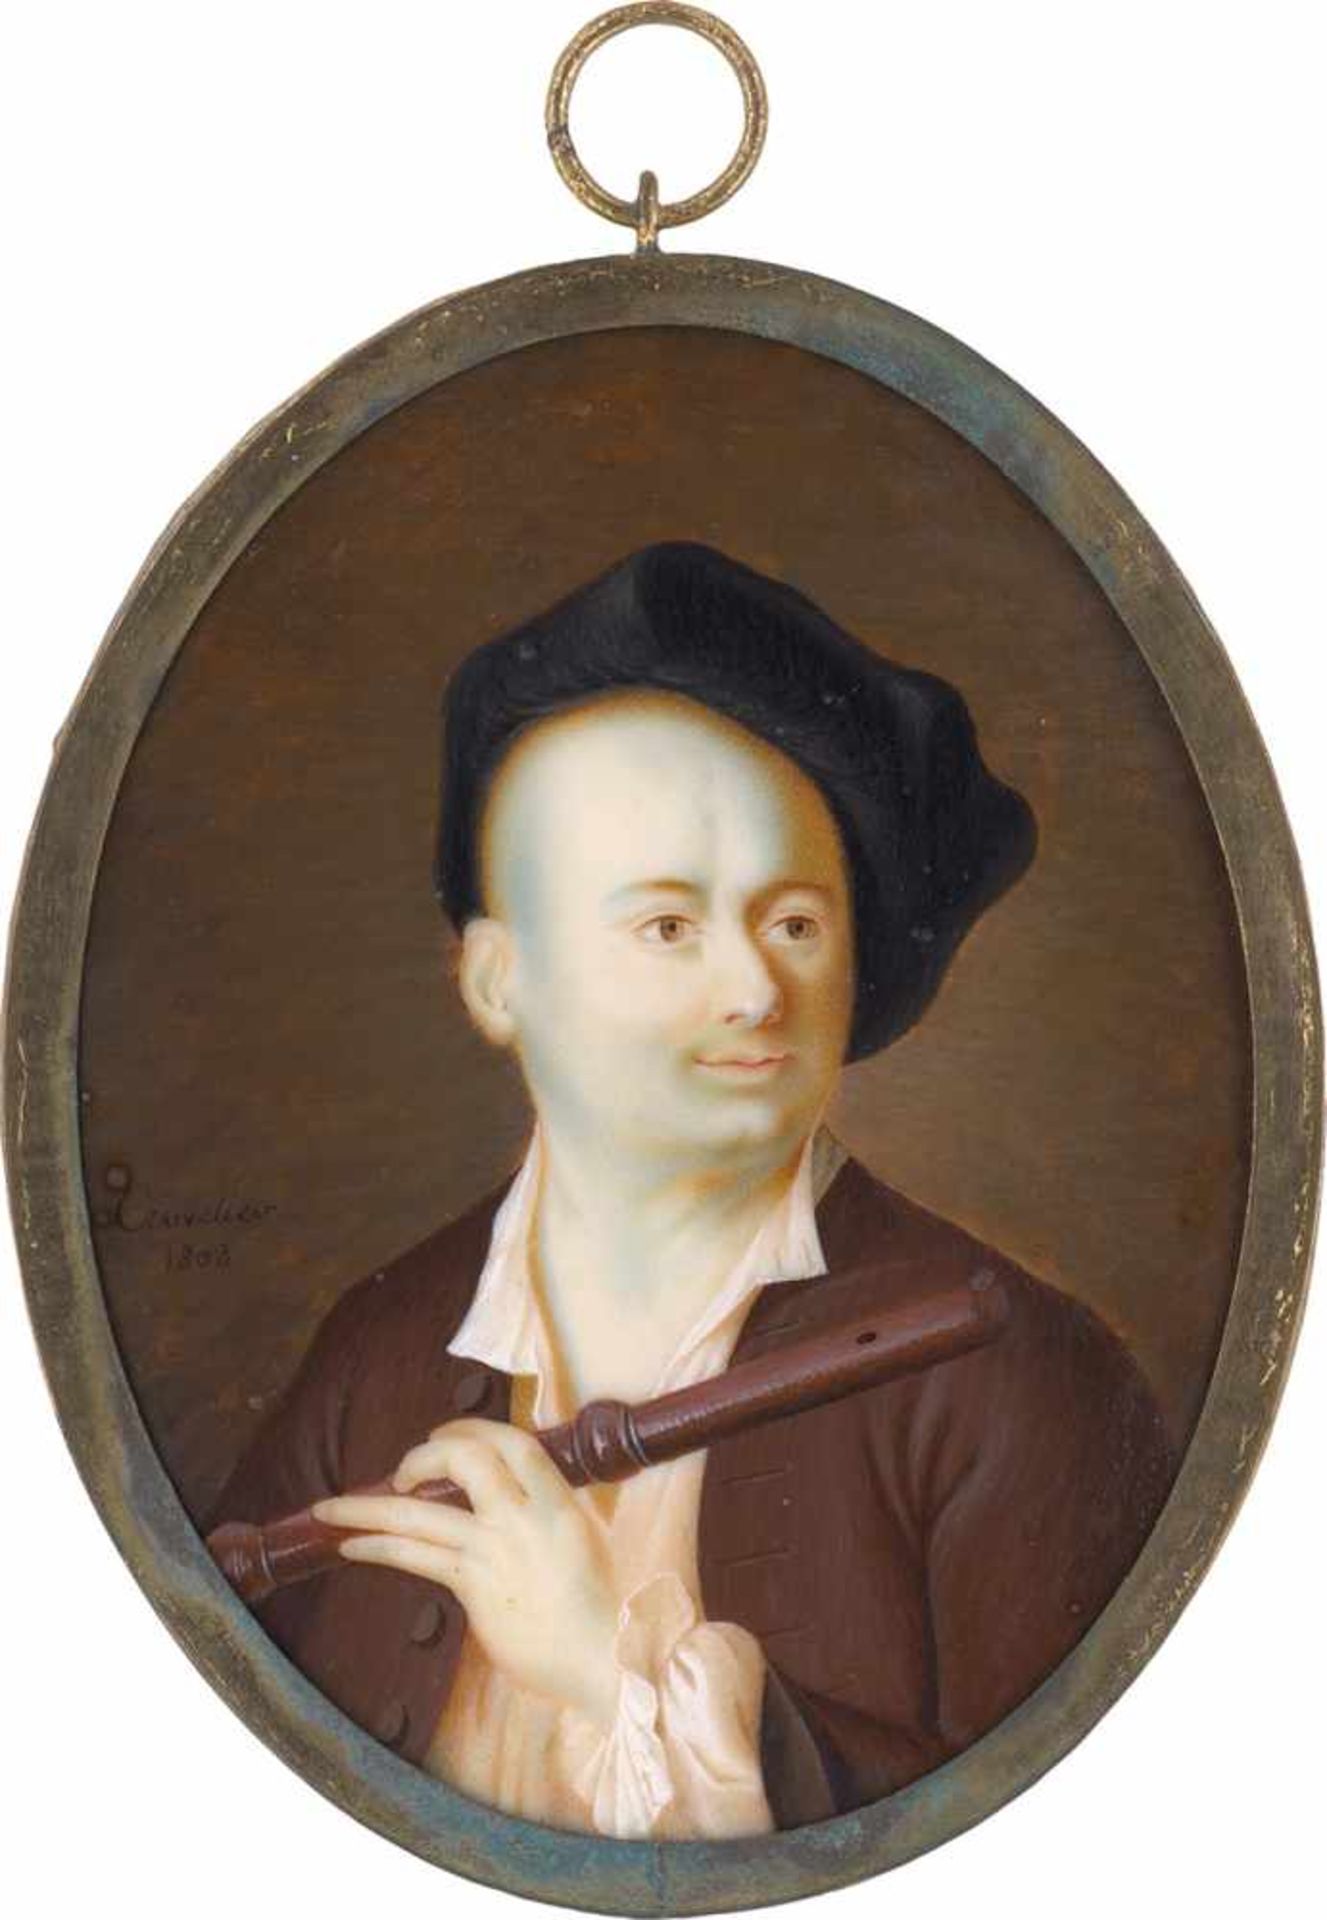 Cruvelier: Bildnis eines jungen Flötenspielers mit schwarzer MützeBildnis eines jungen